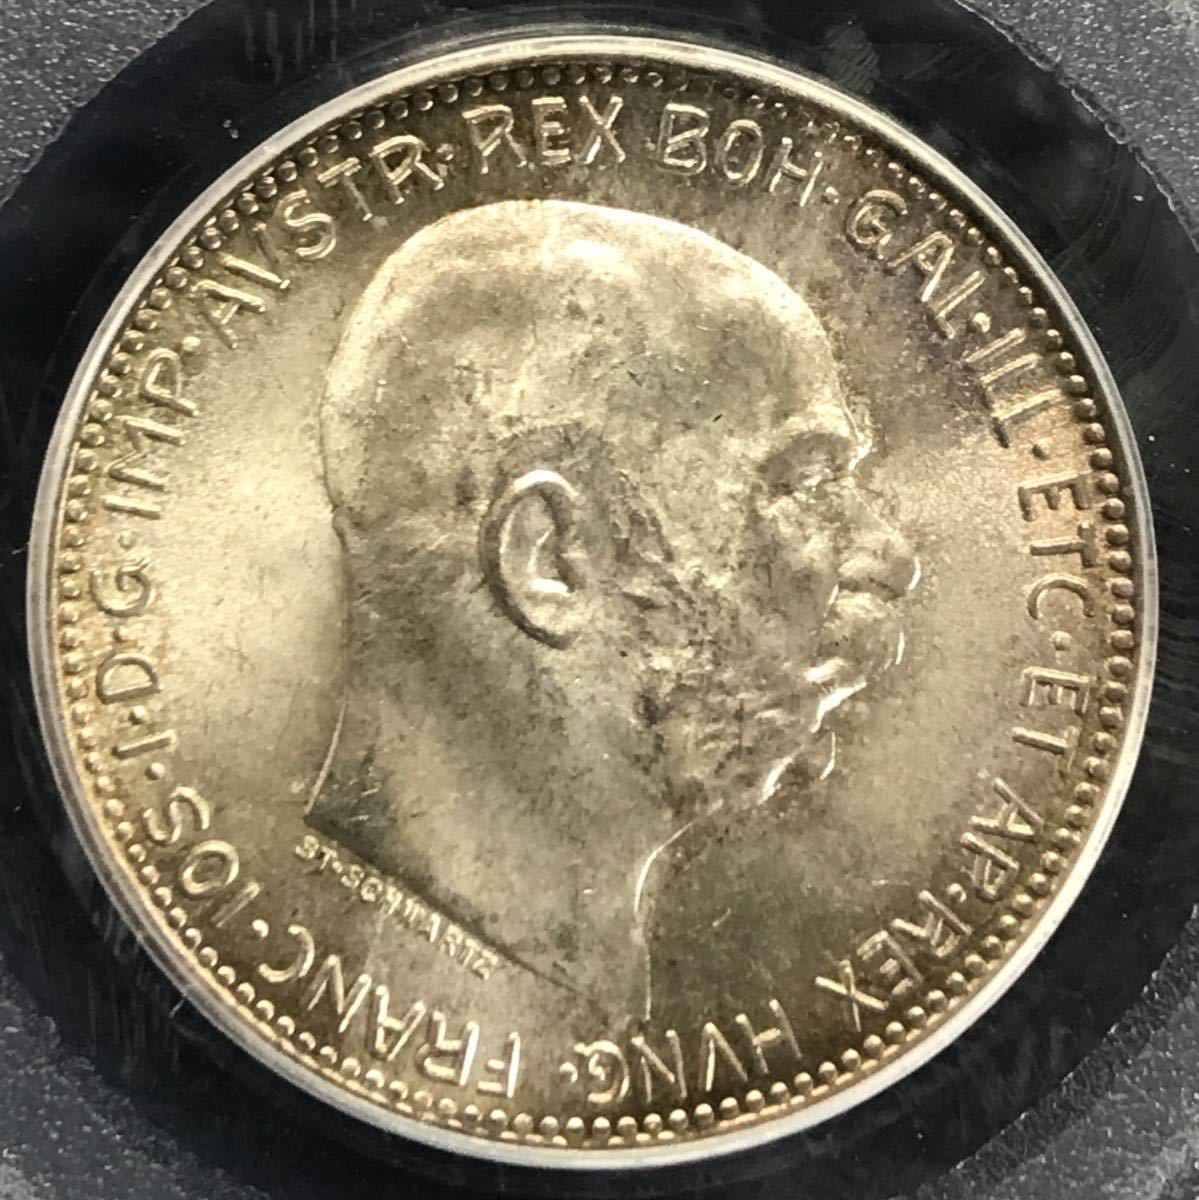 トーン 1915年 オーストリア ハンガリー 帝国 皇帝 国王 フランツ ヨーゼフ 1世 PCGS MS66 銀貨 1コロナ アンティークコイン モダン 資産の画像1